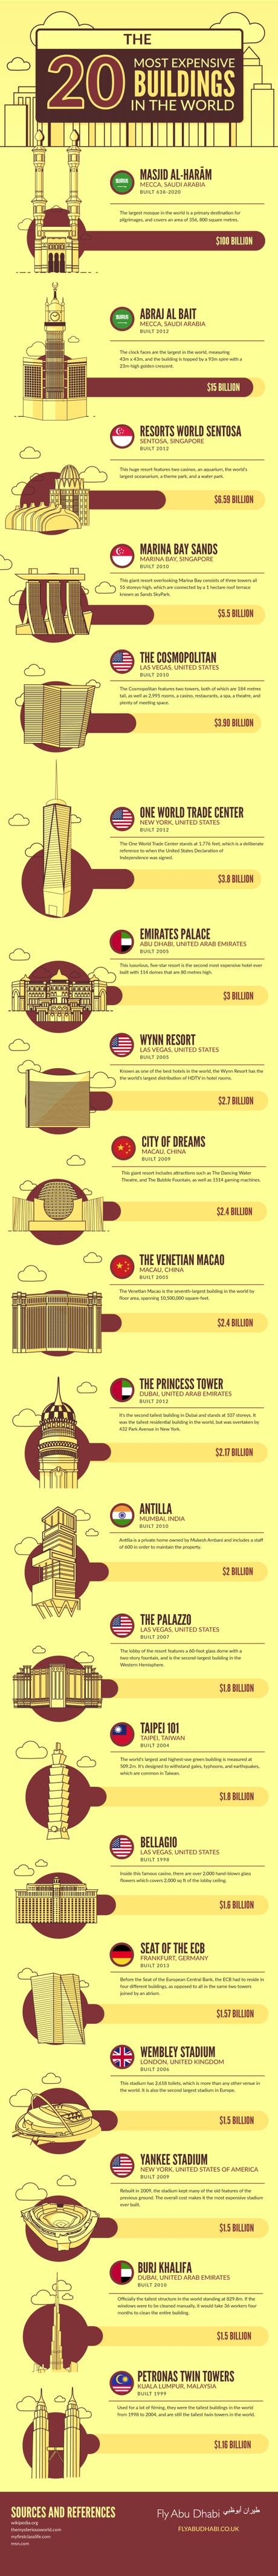 Estos son los 20 edificios más costosos del mundo